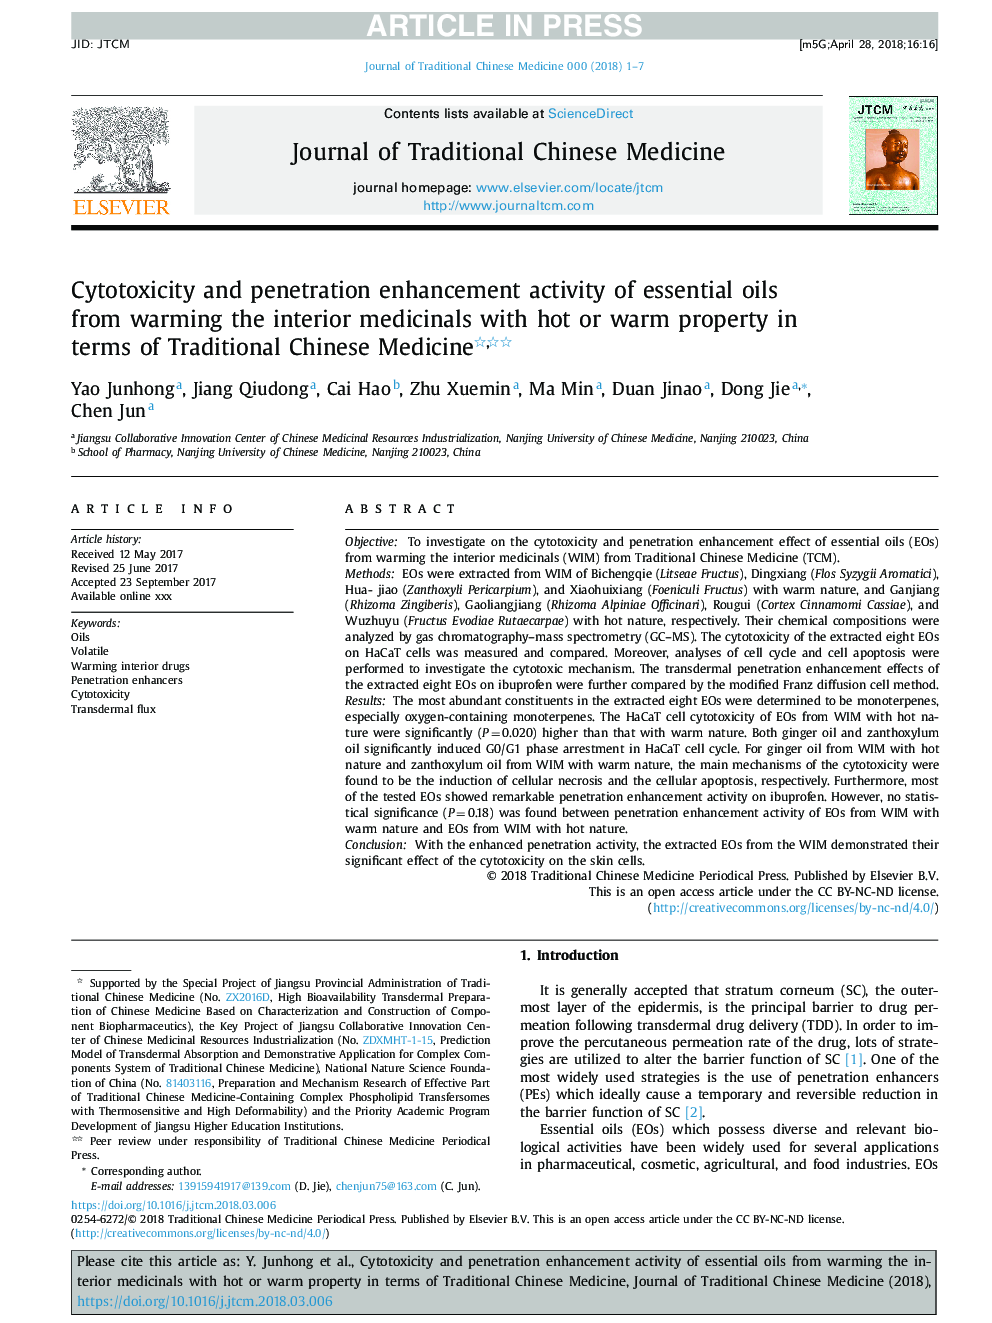 فعالیت سیتوتوکسی سمی و افزایش نفوذ روغن های اسانس از گرم شدن داخلی پزشکان با املاح داغ یا گرم از نظر طب سنتی چینی